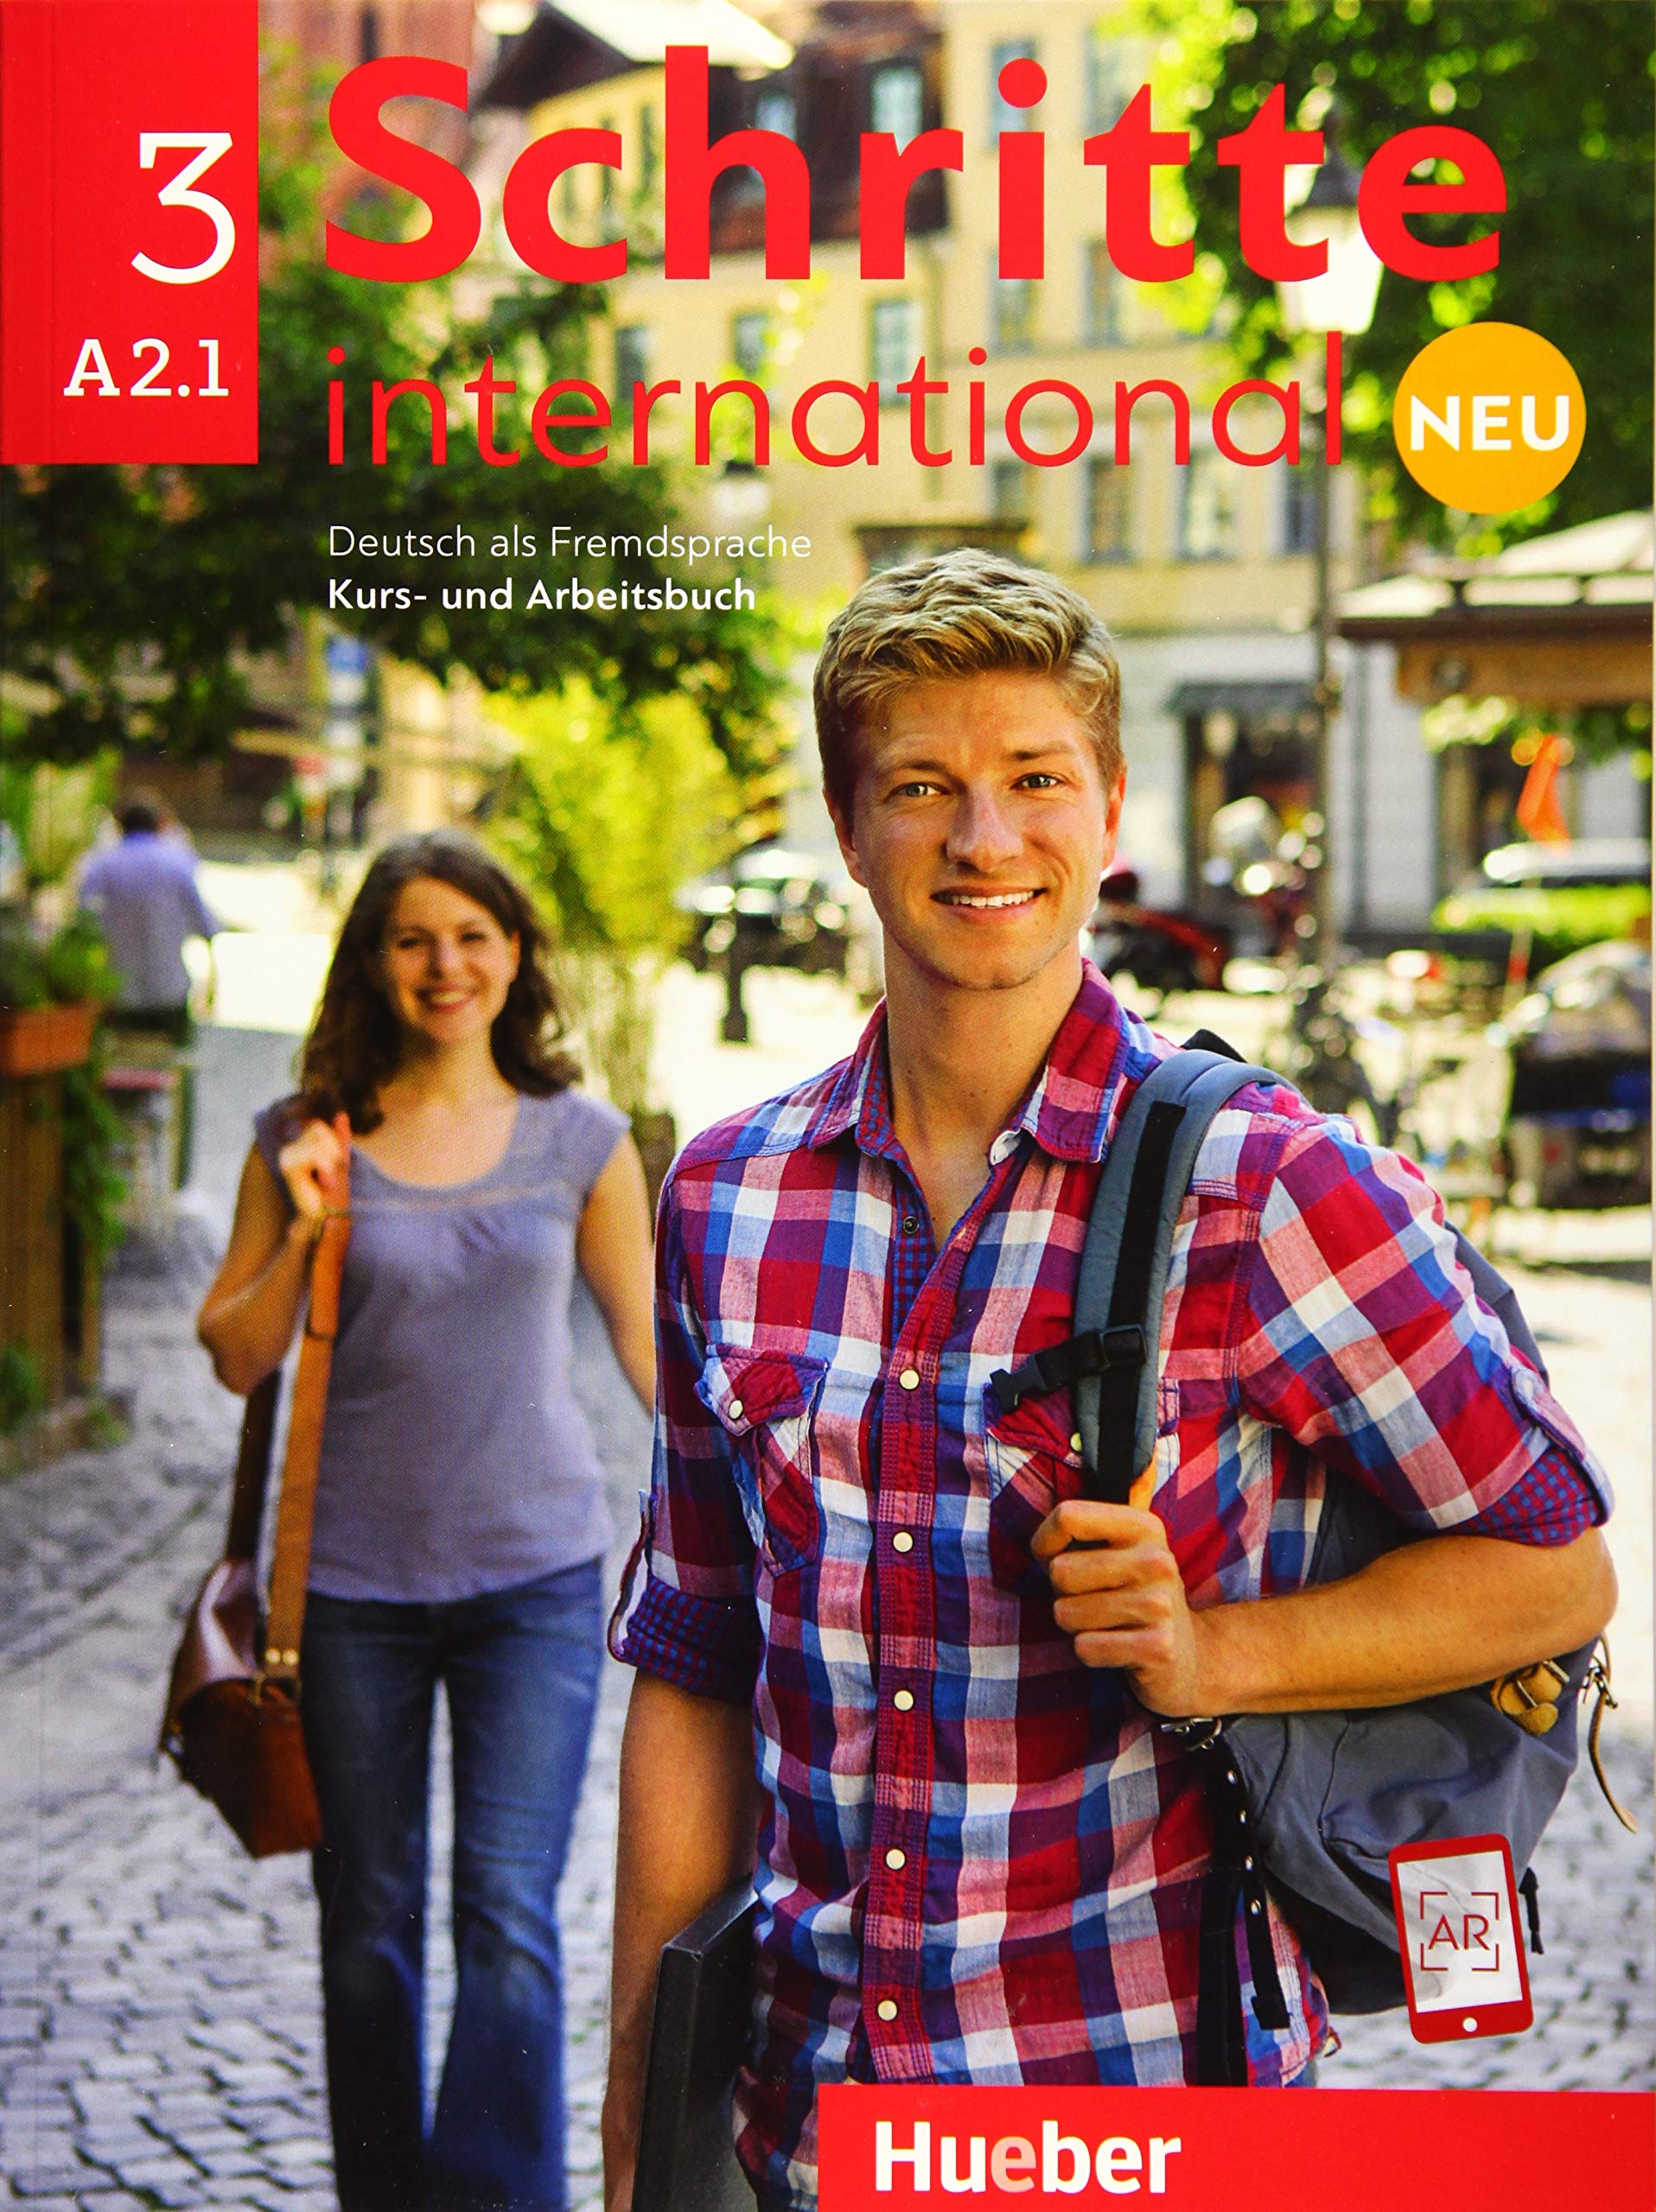 Schritte International Neu 3 - Kurs - und Arbeitsbuch A2.1 - Nivel incepator |